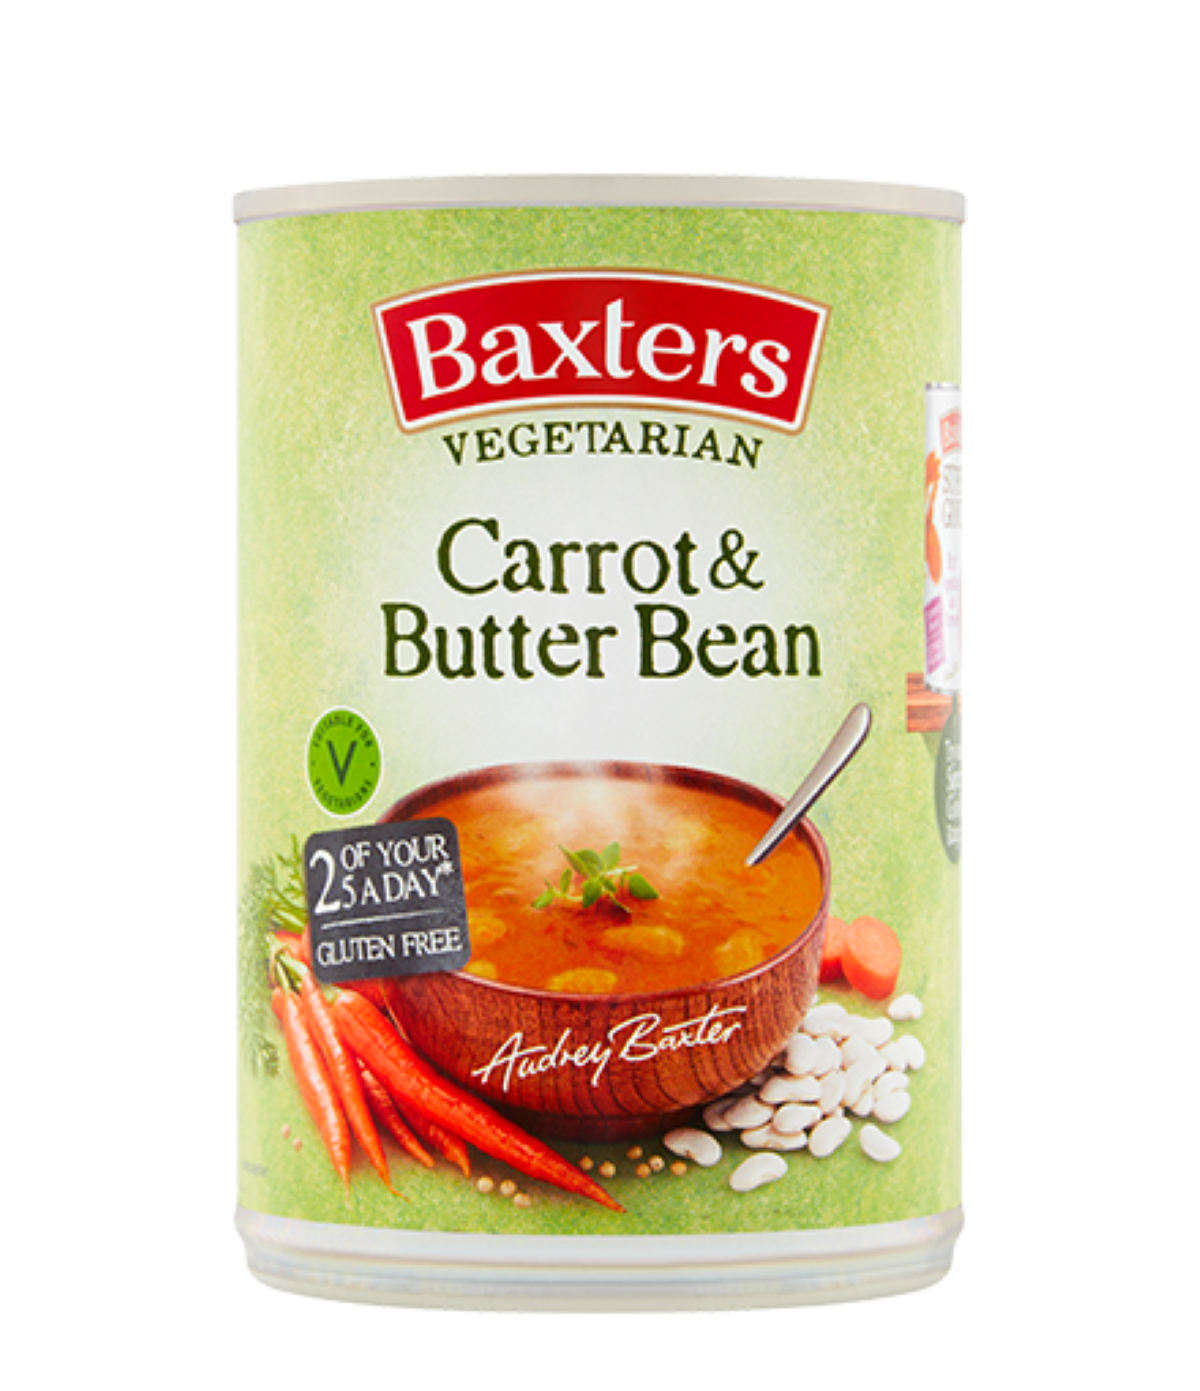 Baxter's Carrot & Butter Bean Soup 400g